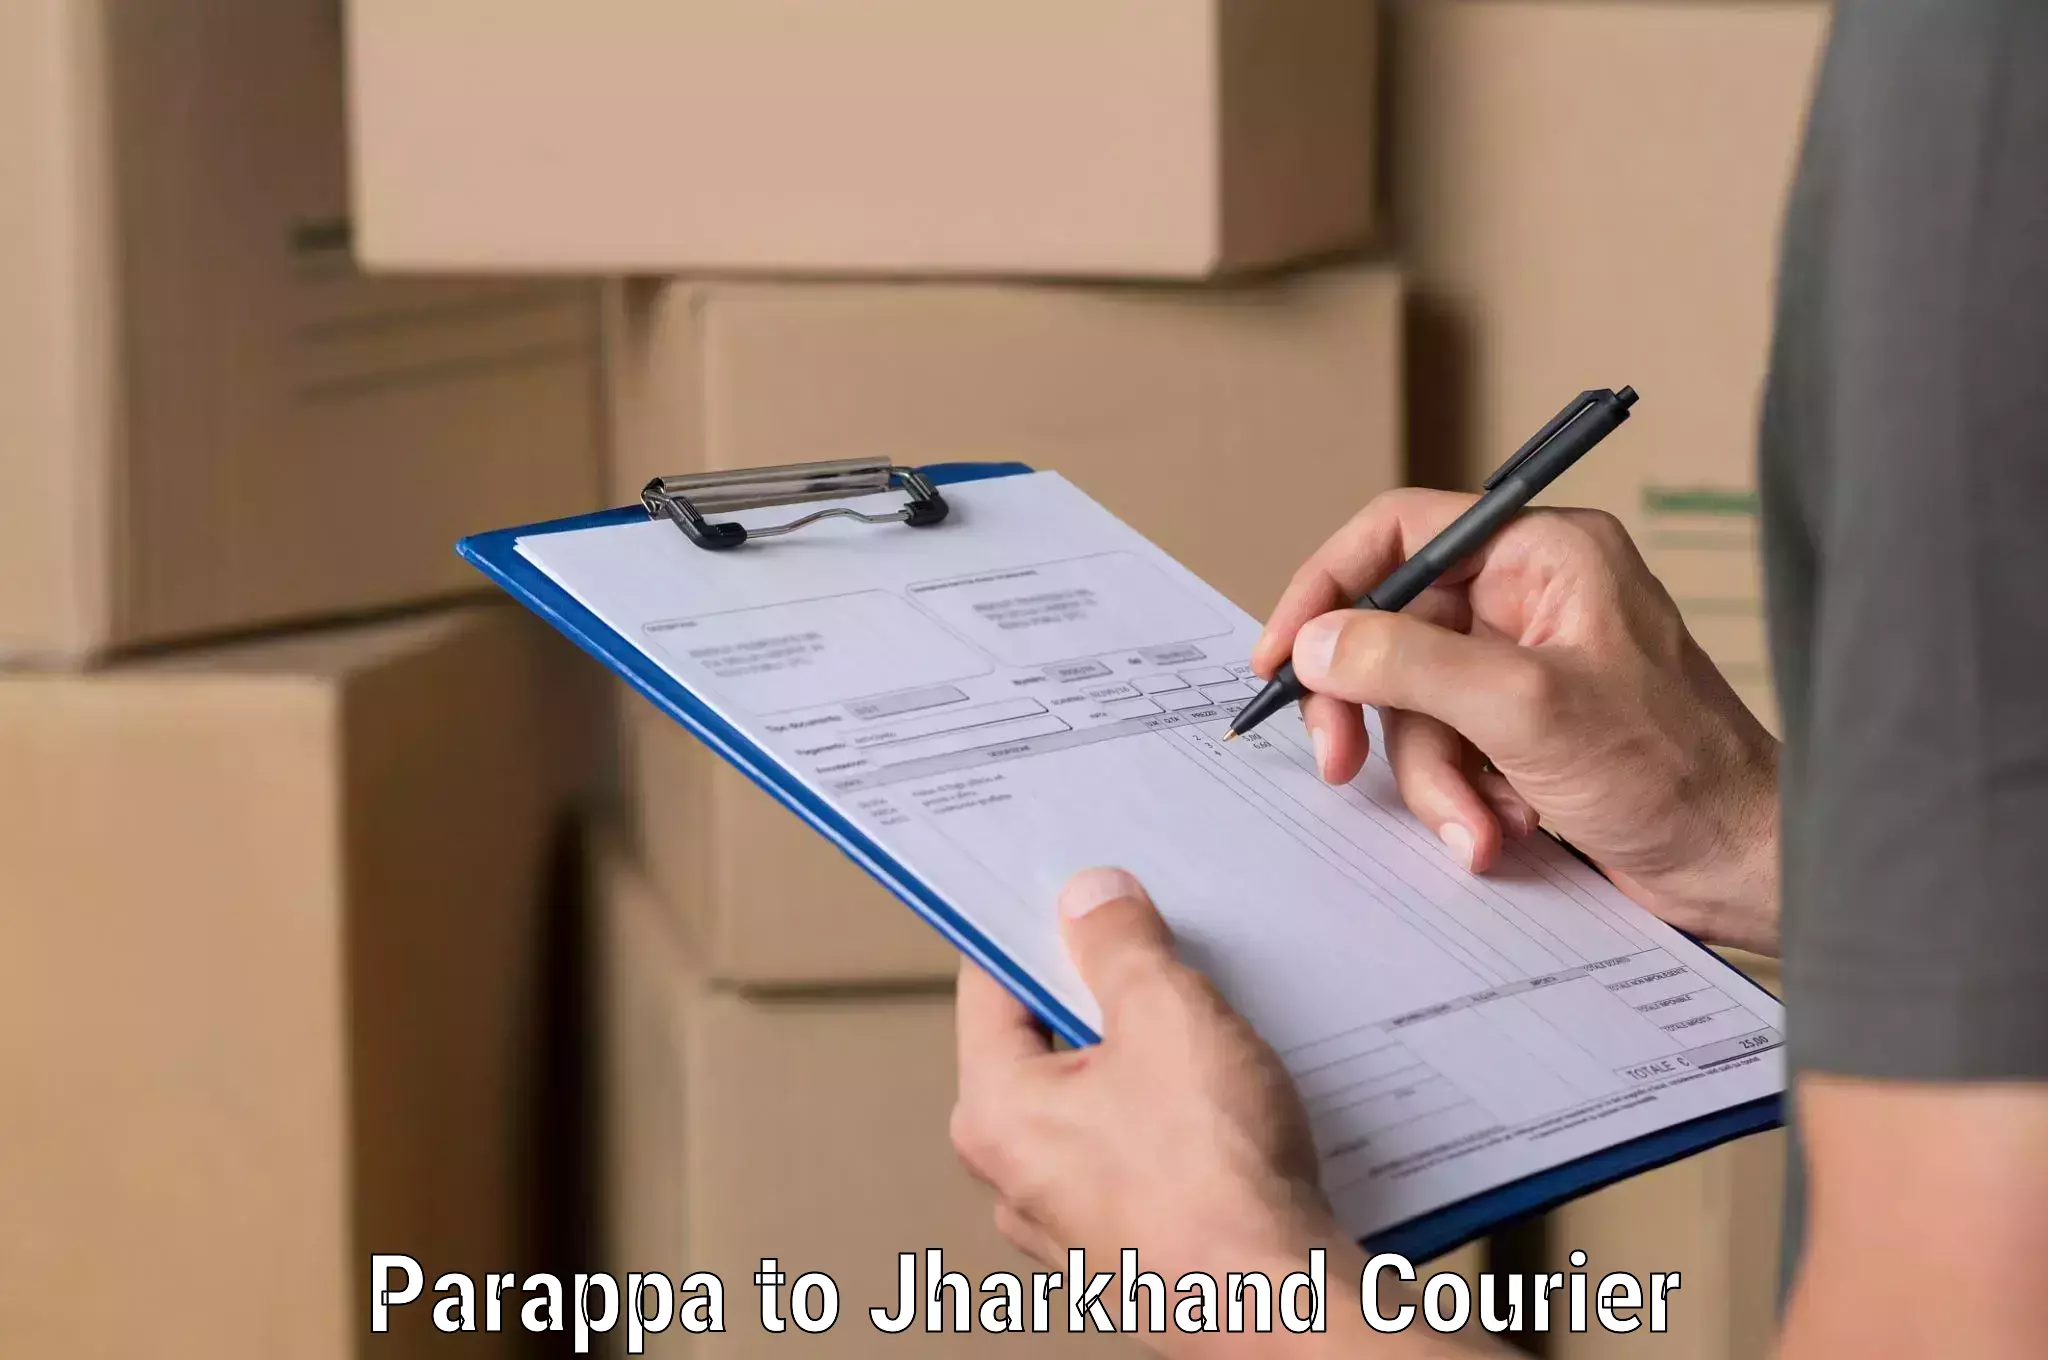 Multi-city courier Parappa to Chhatarpur Palamu